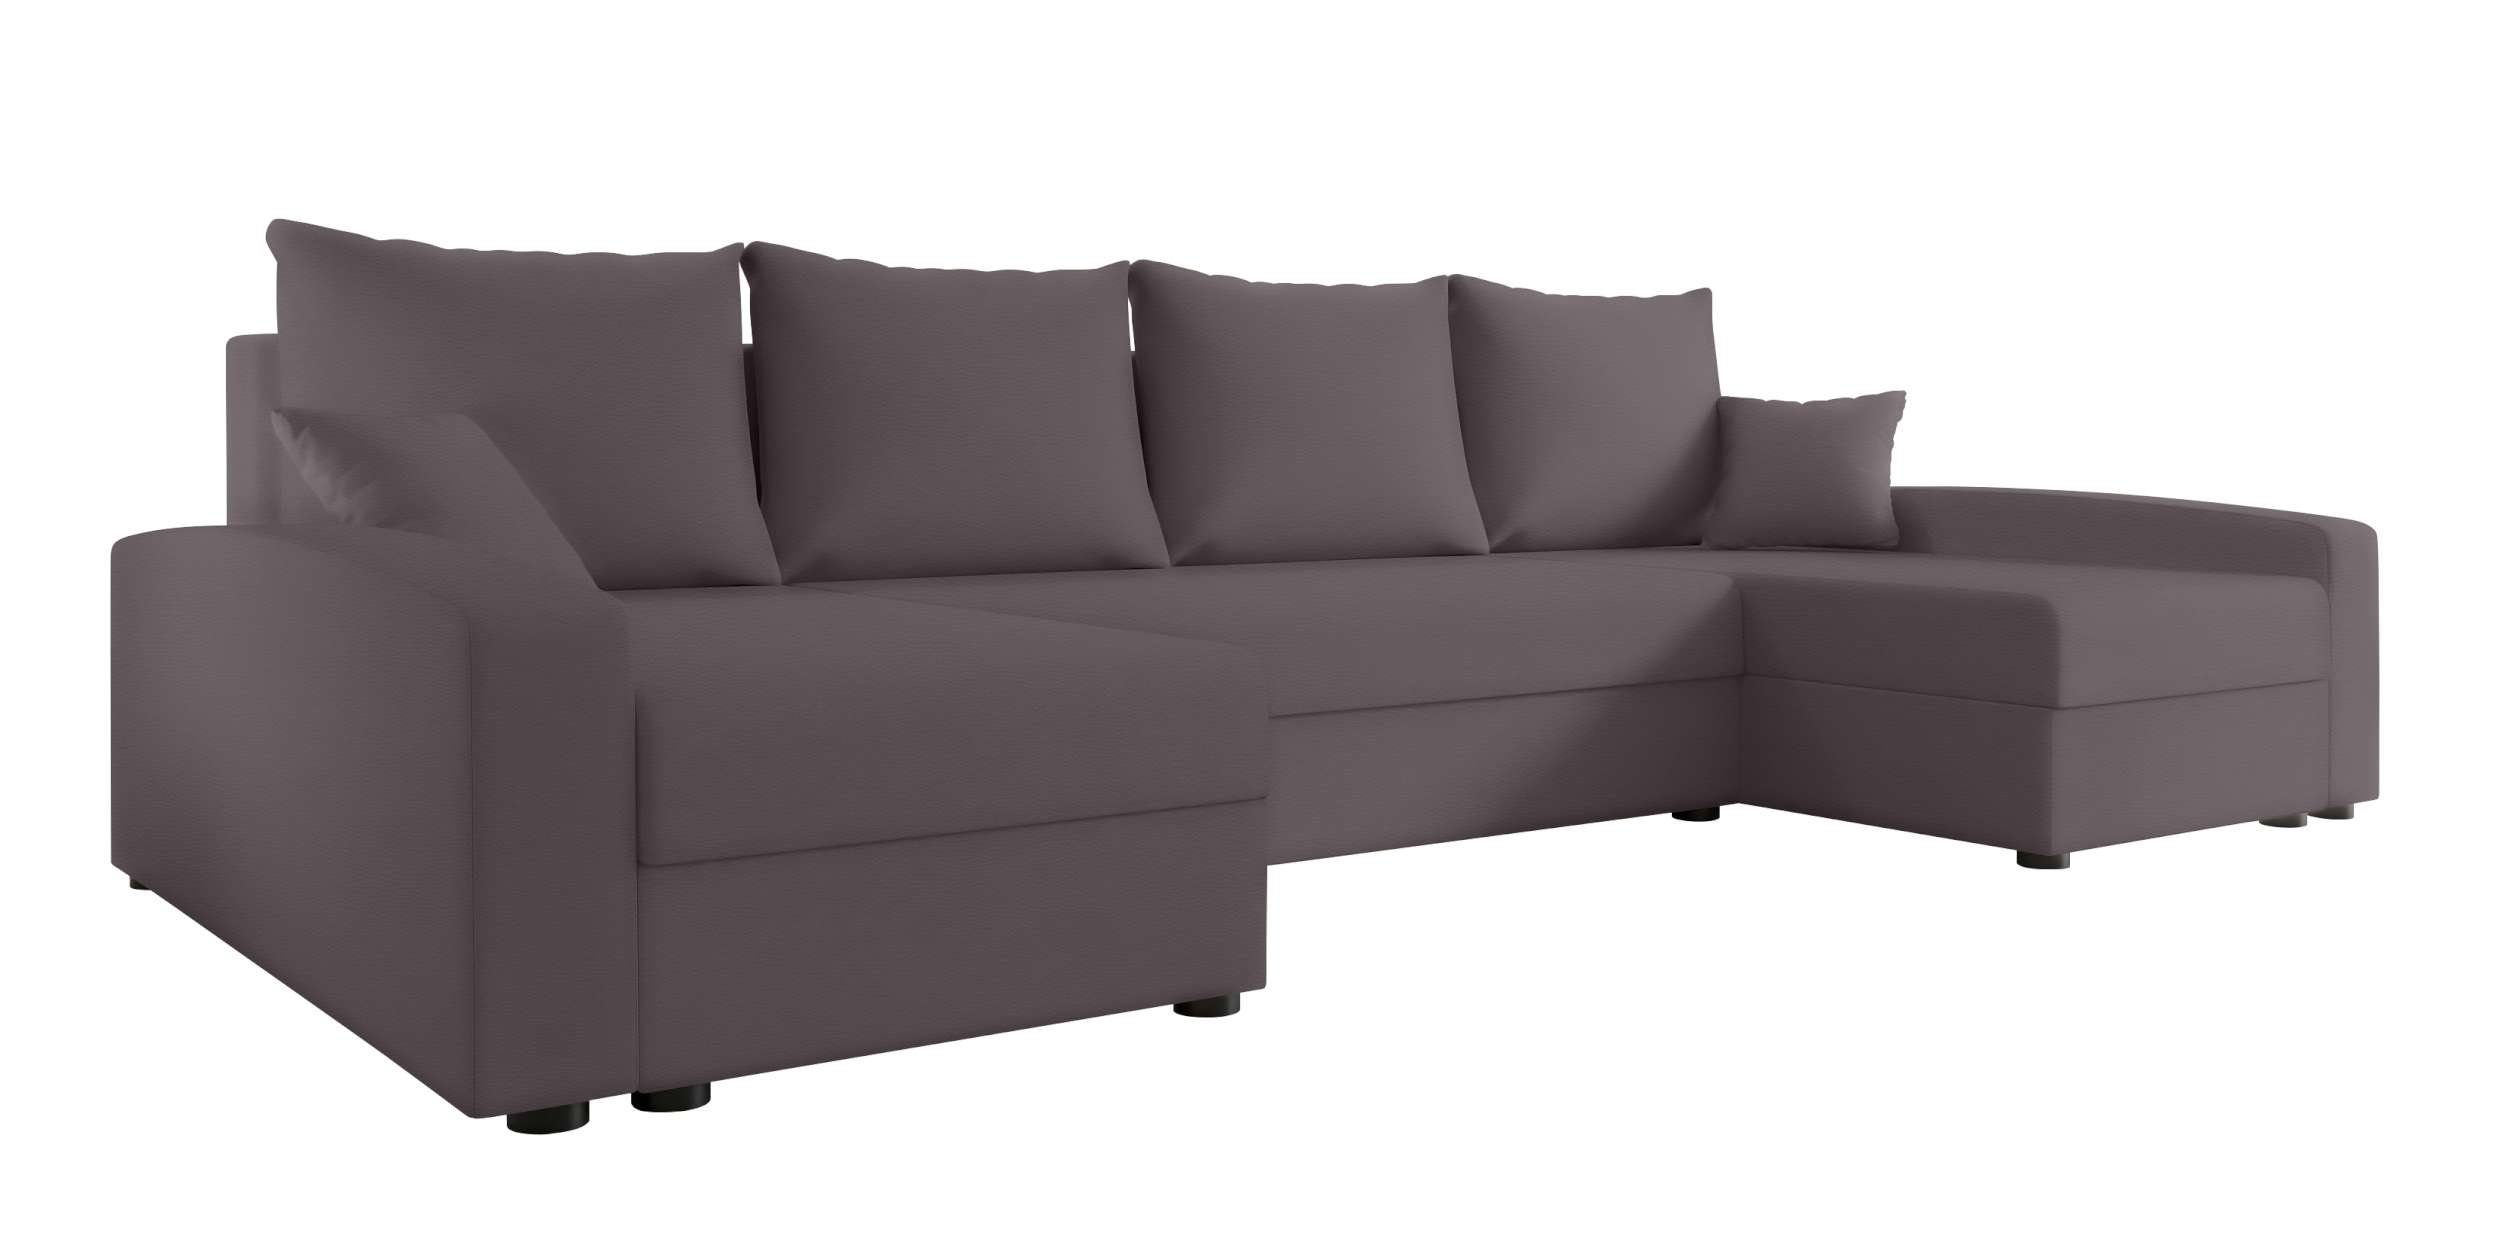 mit Sofa, Addison, Wohnlandschaft Bettkasten, Modern Sitzkomfort, Eckcouch, Design U-Form, Bettfunktion, Stylefy mit